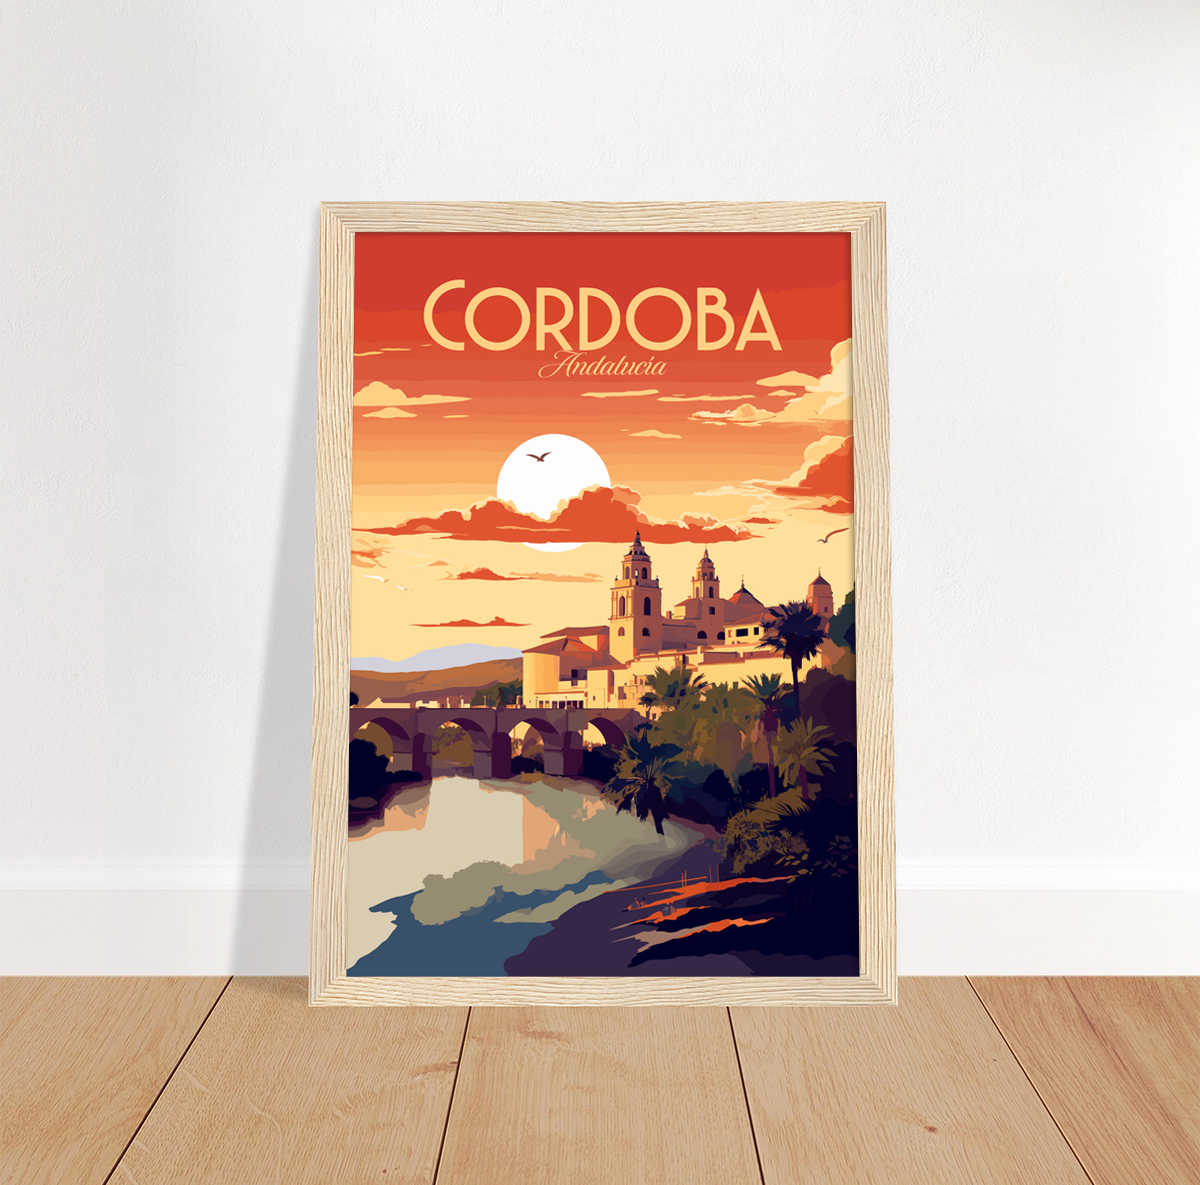 Cordoba poster by bon voyage design